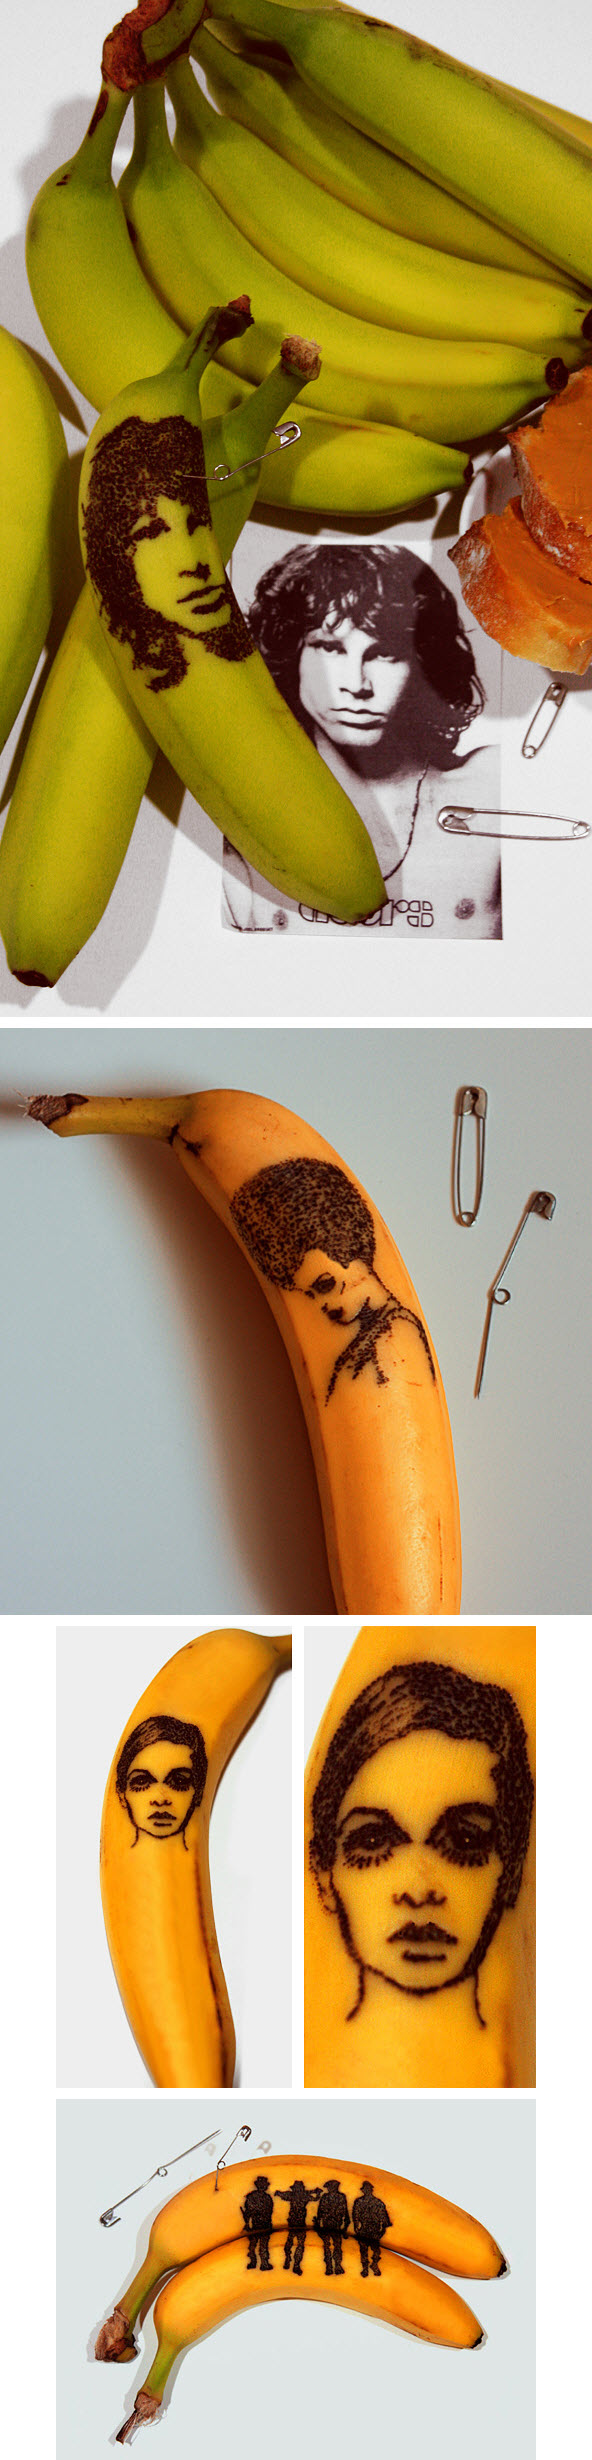 Banana Art03.jpg